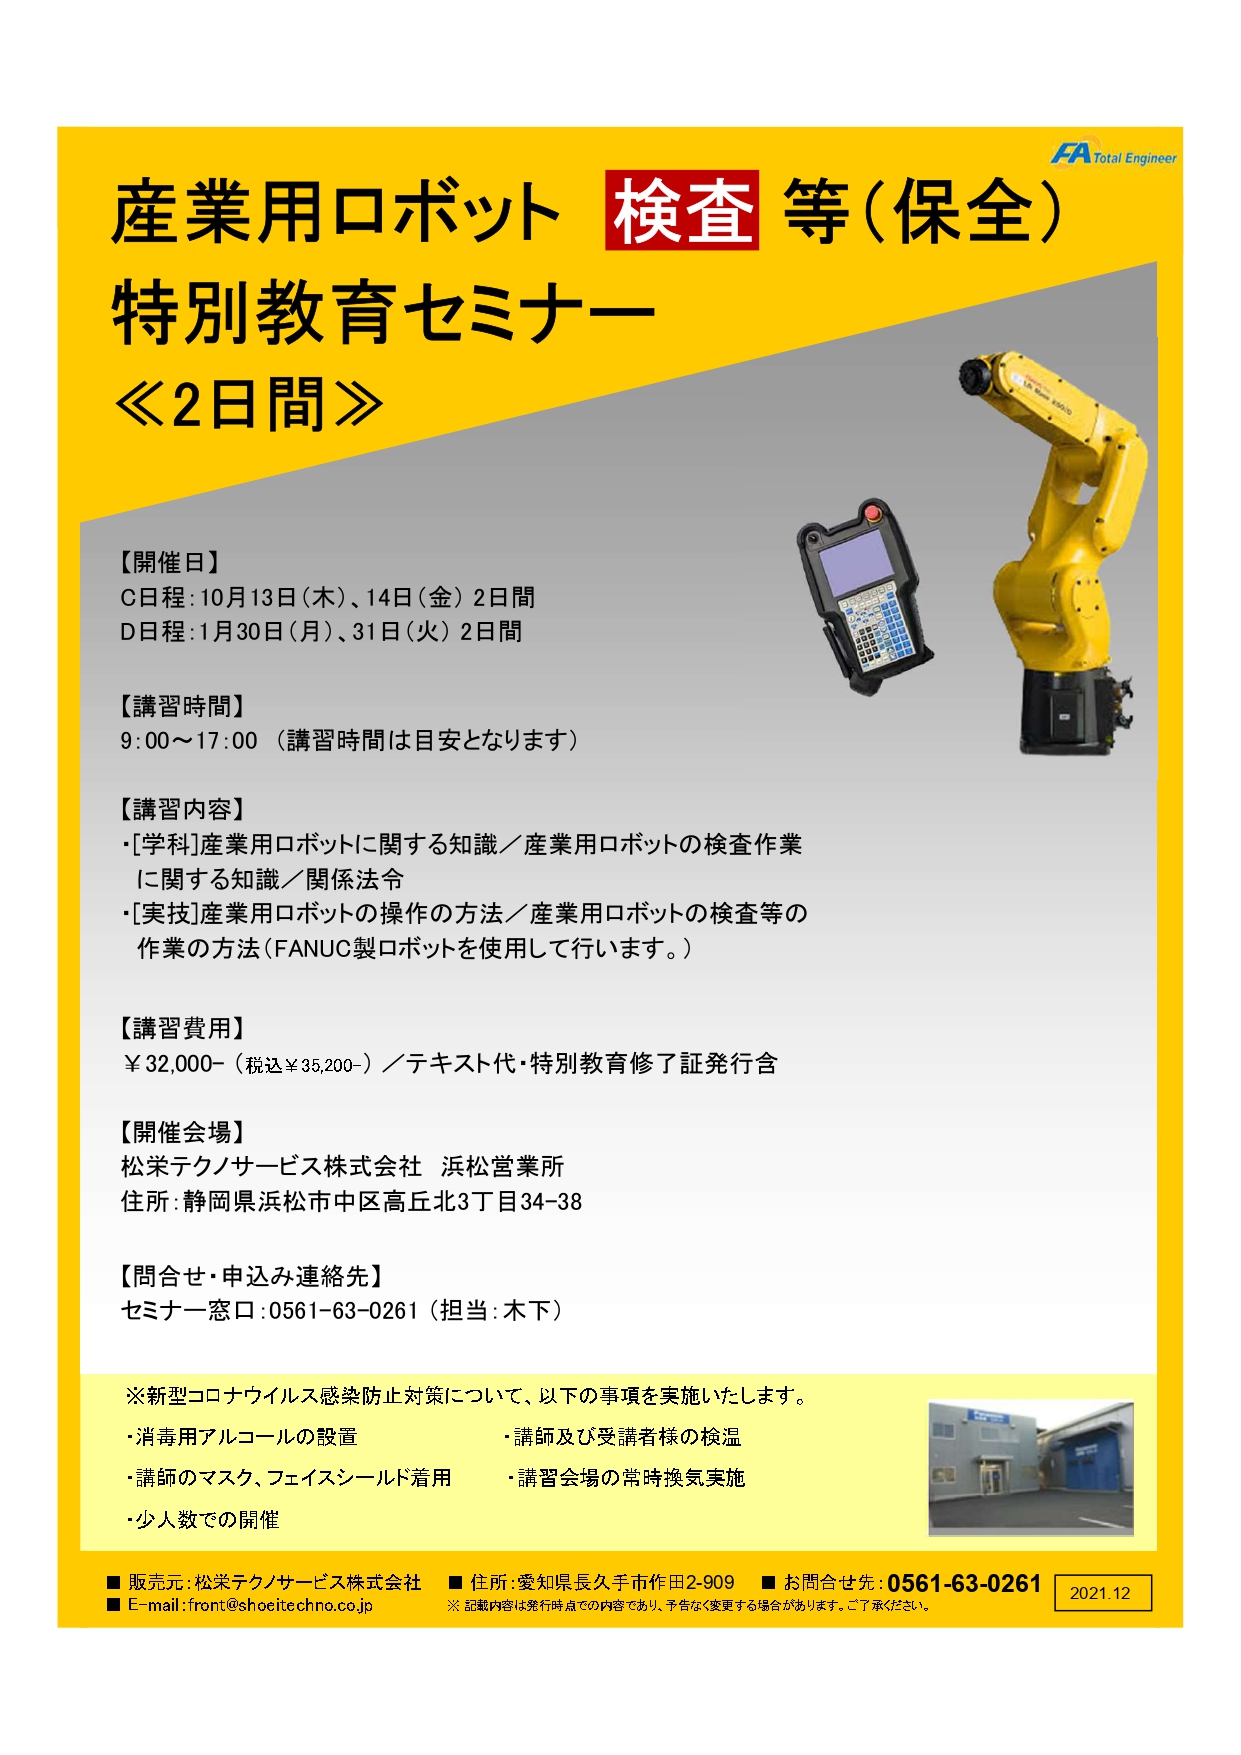 【終了しました】産業用ロボット特別教育検査等（保全）静岡会場開催のお知らせ【2022年10月、2023年1月】